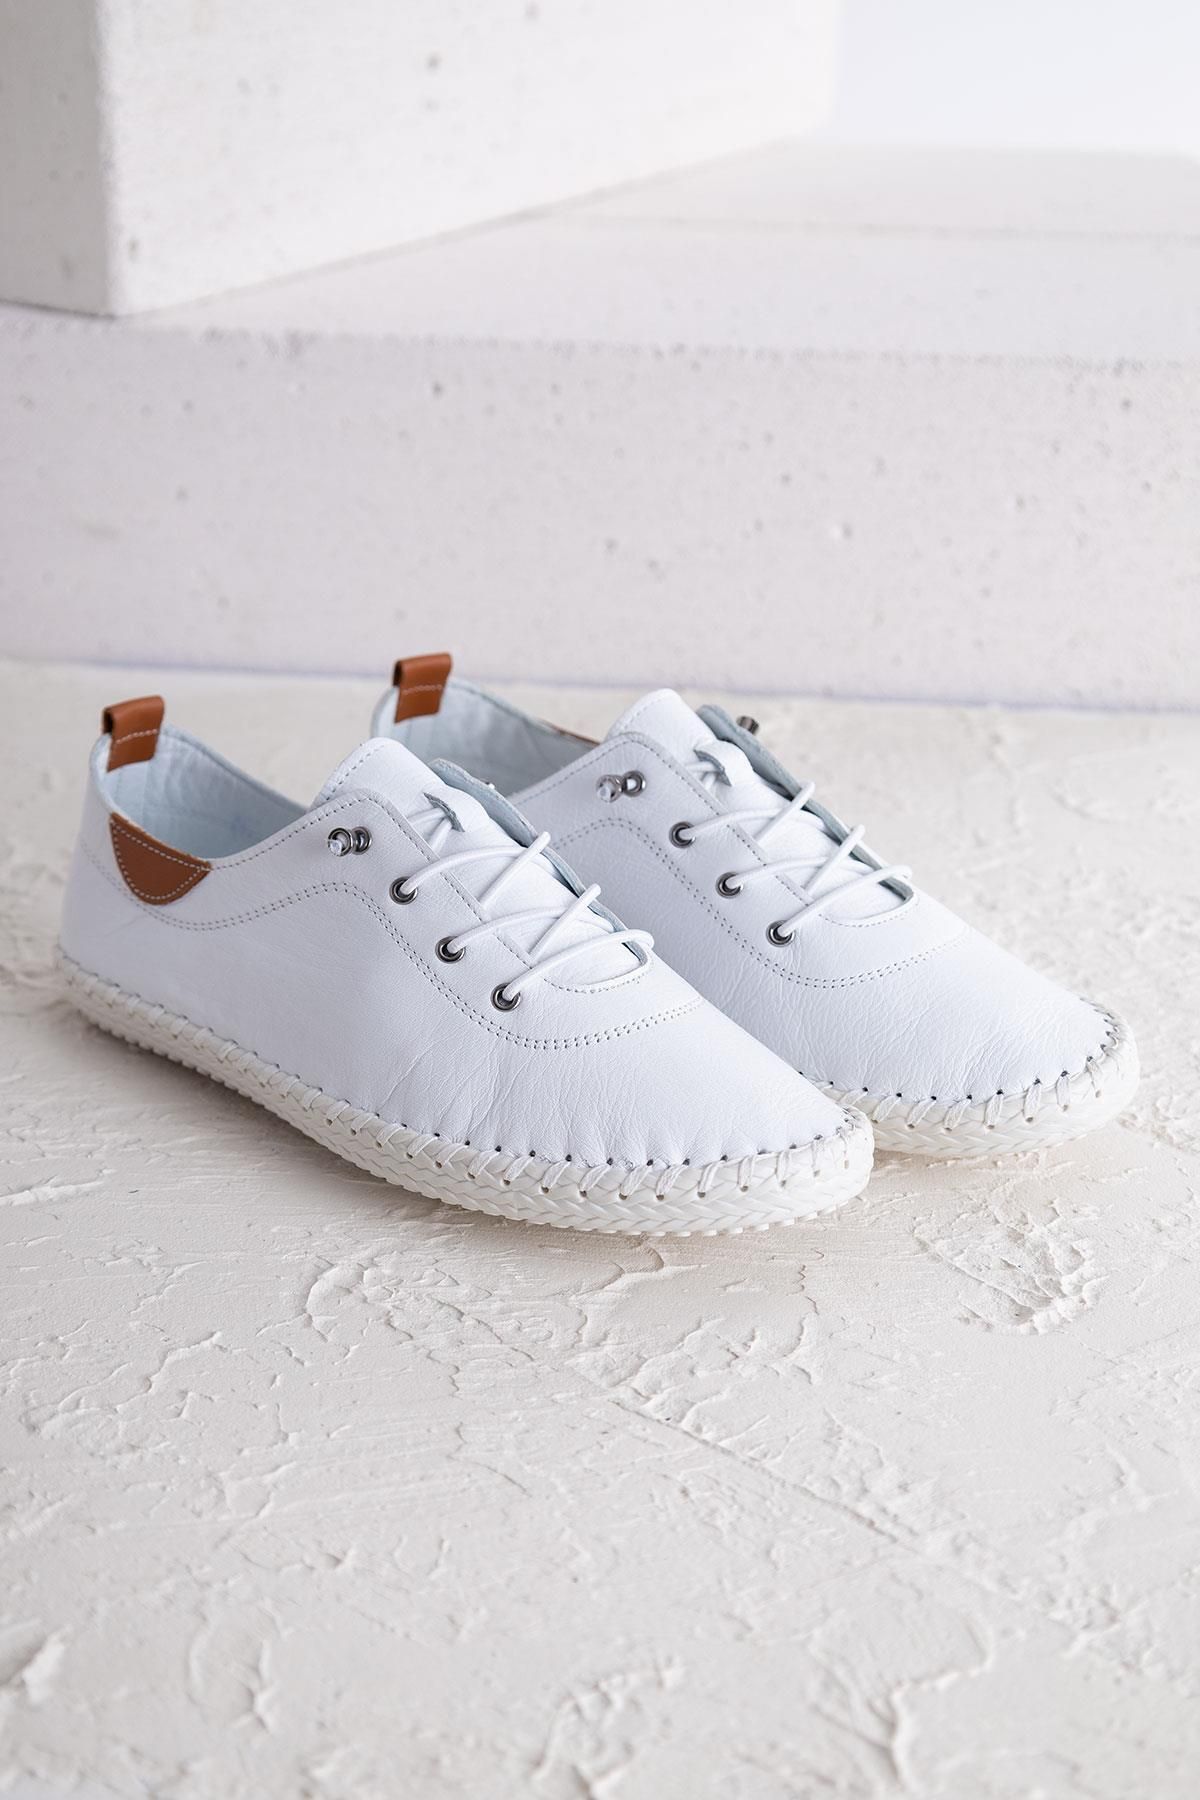 Aleza Shoes Estoy Beyaz Hakiki Deri Ayakkabı